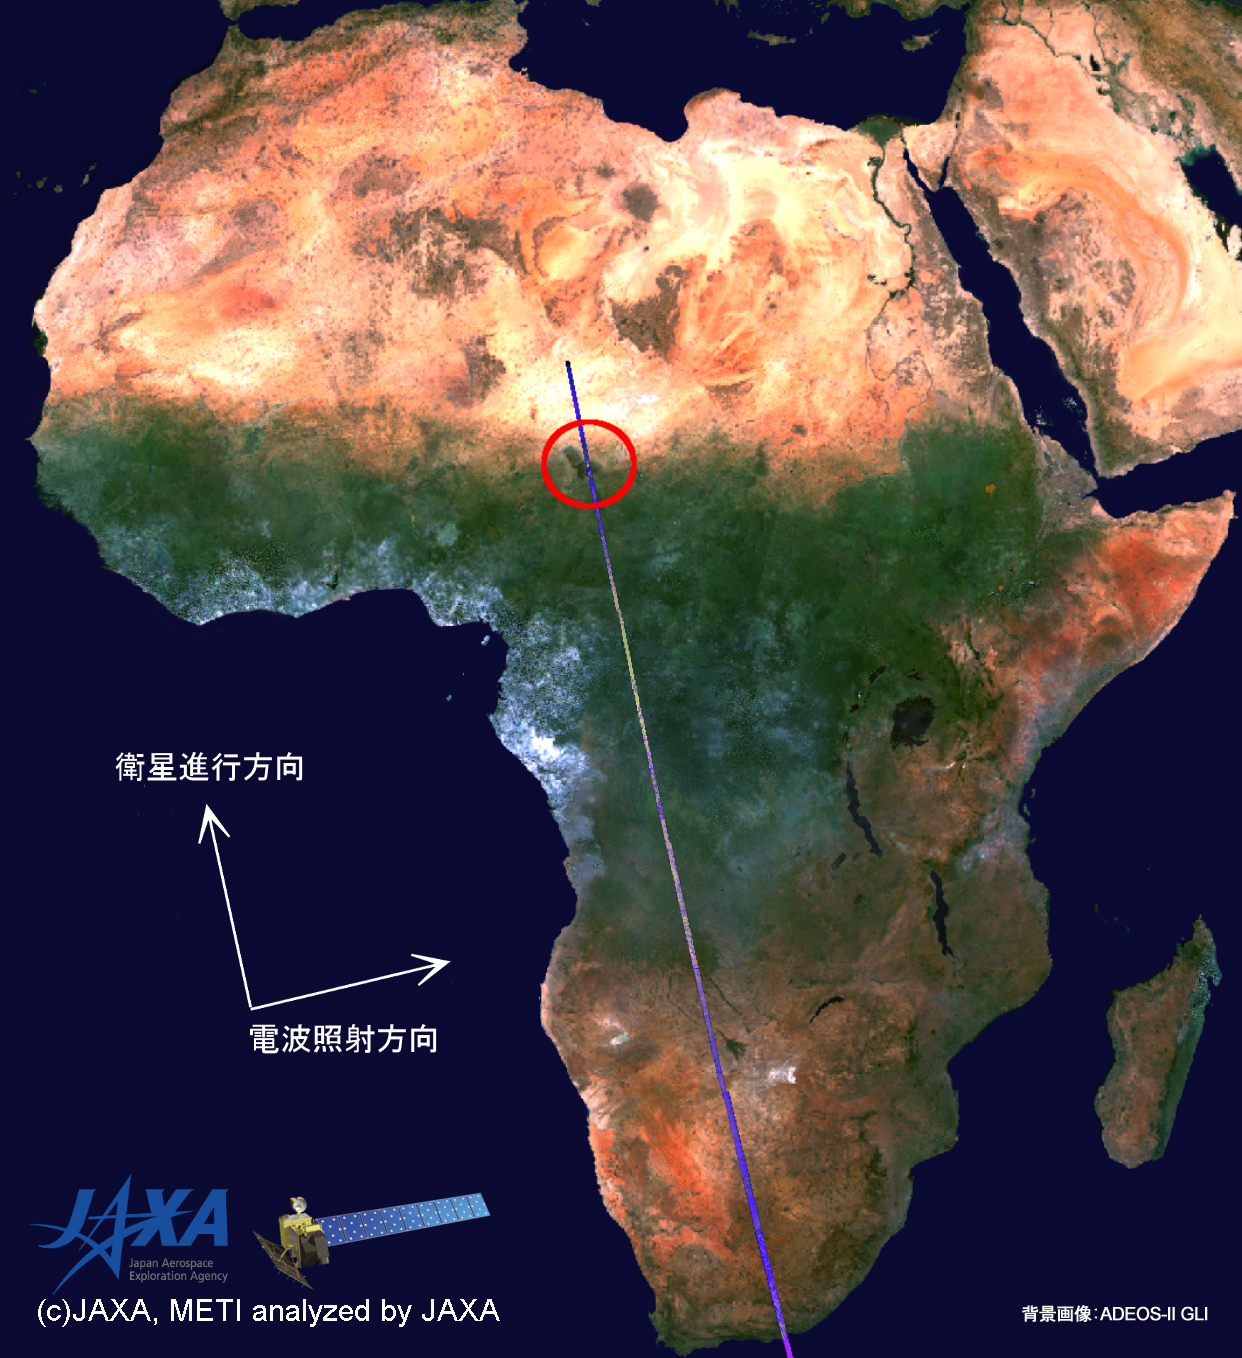 図5:陸域観測技術衛星「だいち」搭載センサ、フェーズドアレイ方式Lバンド合成開口レーダ(パルサー)最終画像の撮像位置(背景画像はADEOS-II搭載センサ、GLIによる)